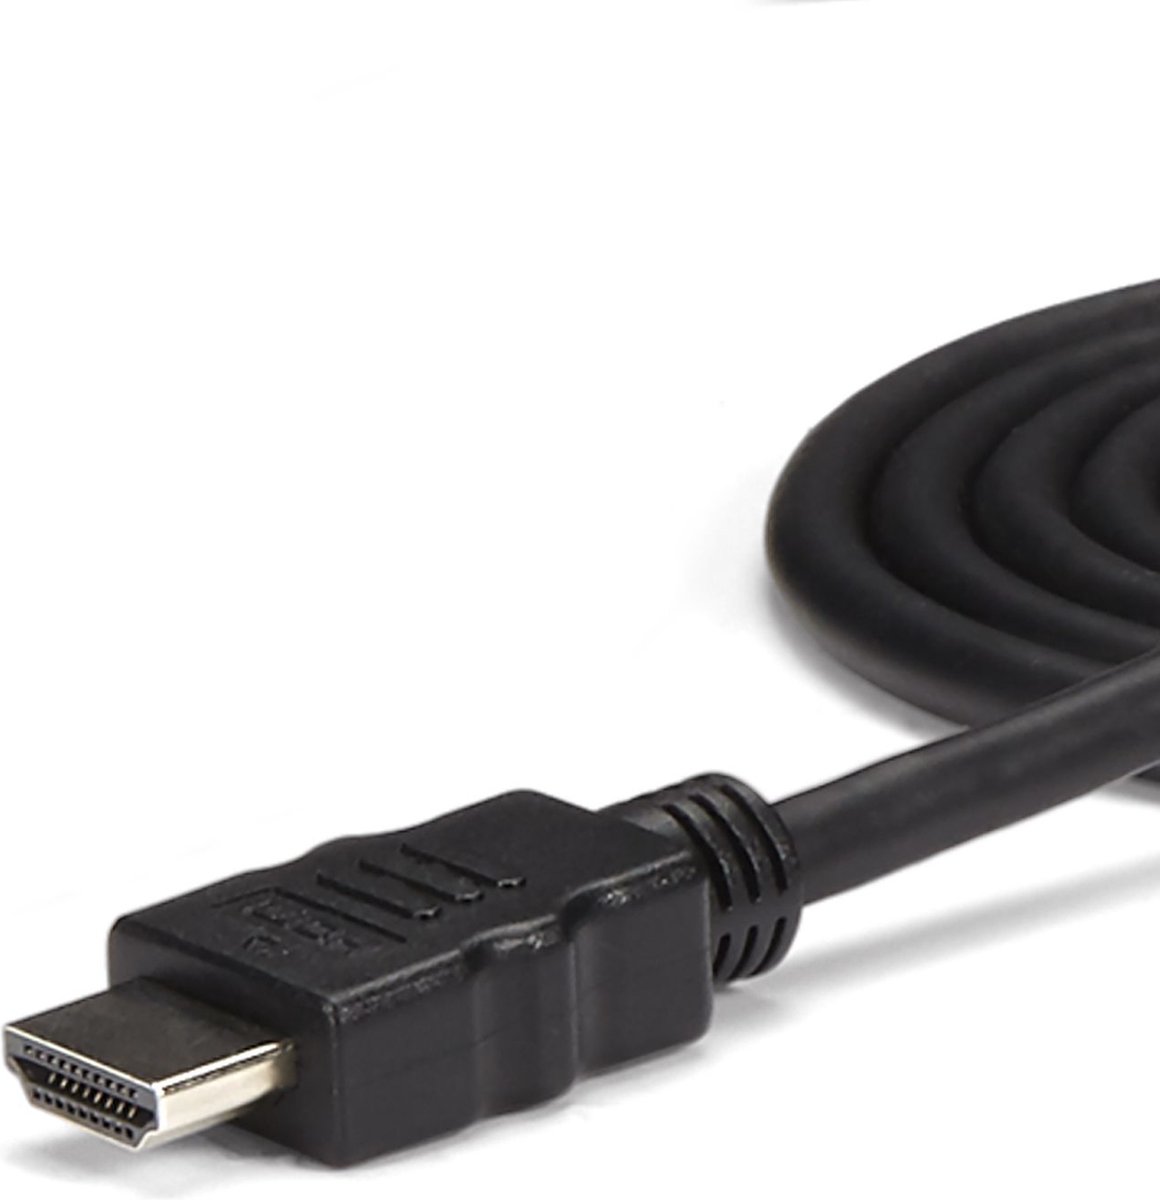 Adaptateur USB-C Audio & Chargeur - Convertisseur Prise Audio Mini Jack Aux  TRRS 3.5mm Casque/Écouteurs - 60W USB Type-C Power Delivery Pass-Through 